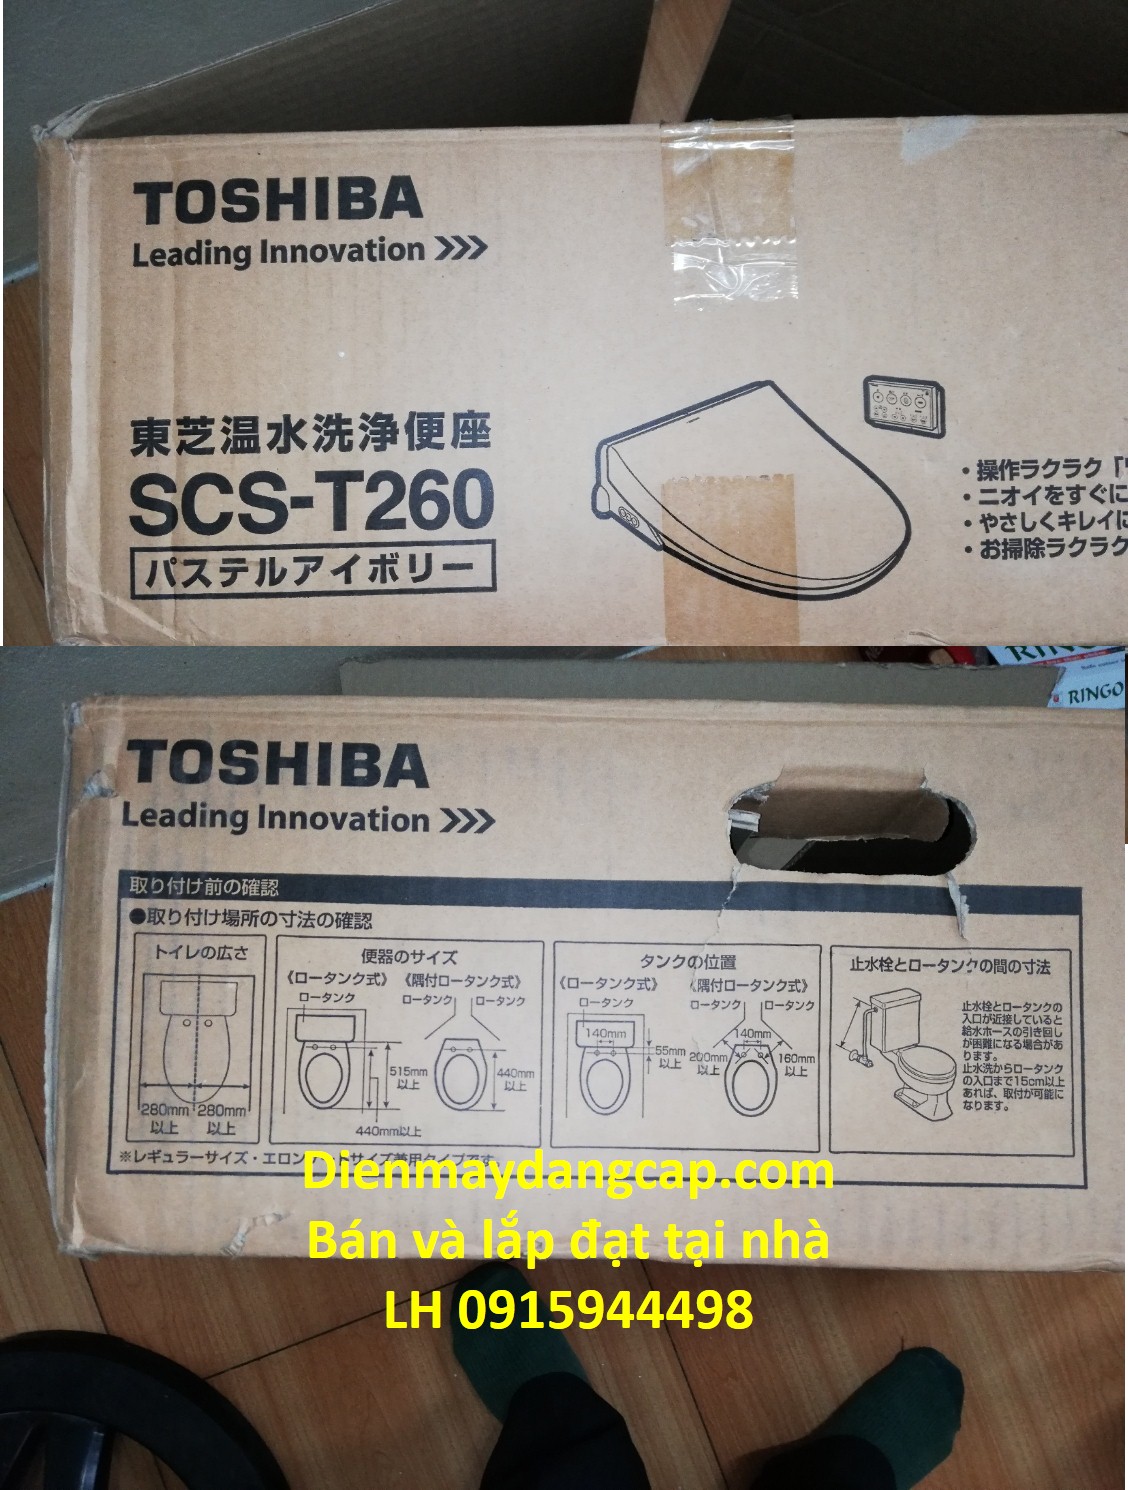 Nắp bệt thông mình Toshiba SCS-T260.jpg2